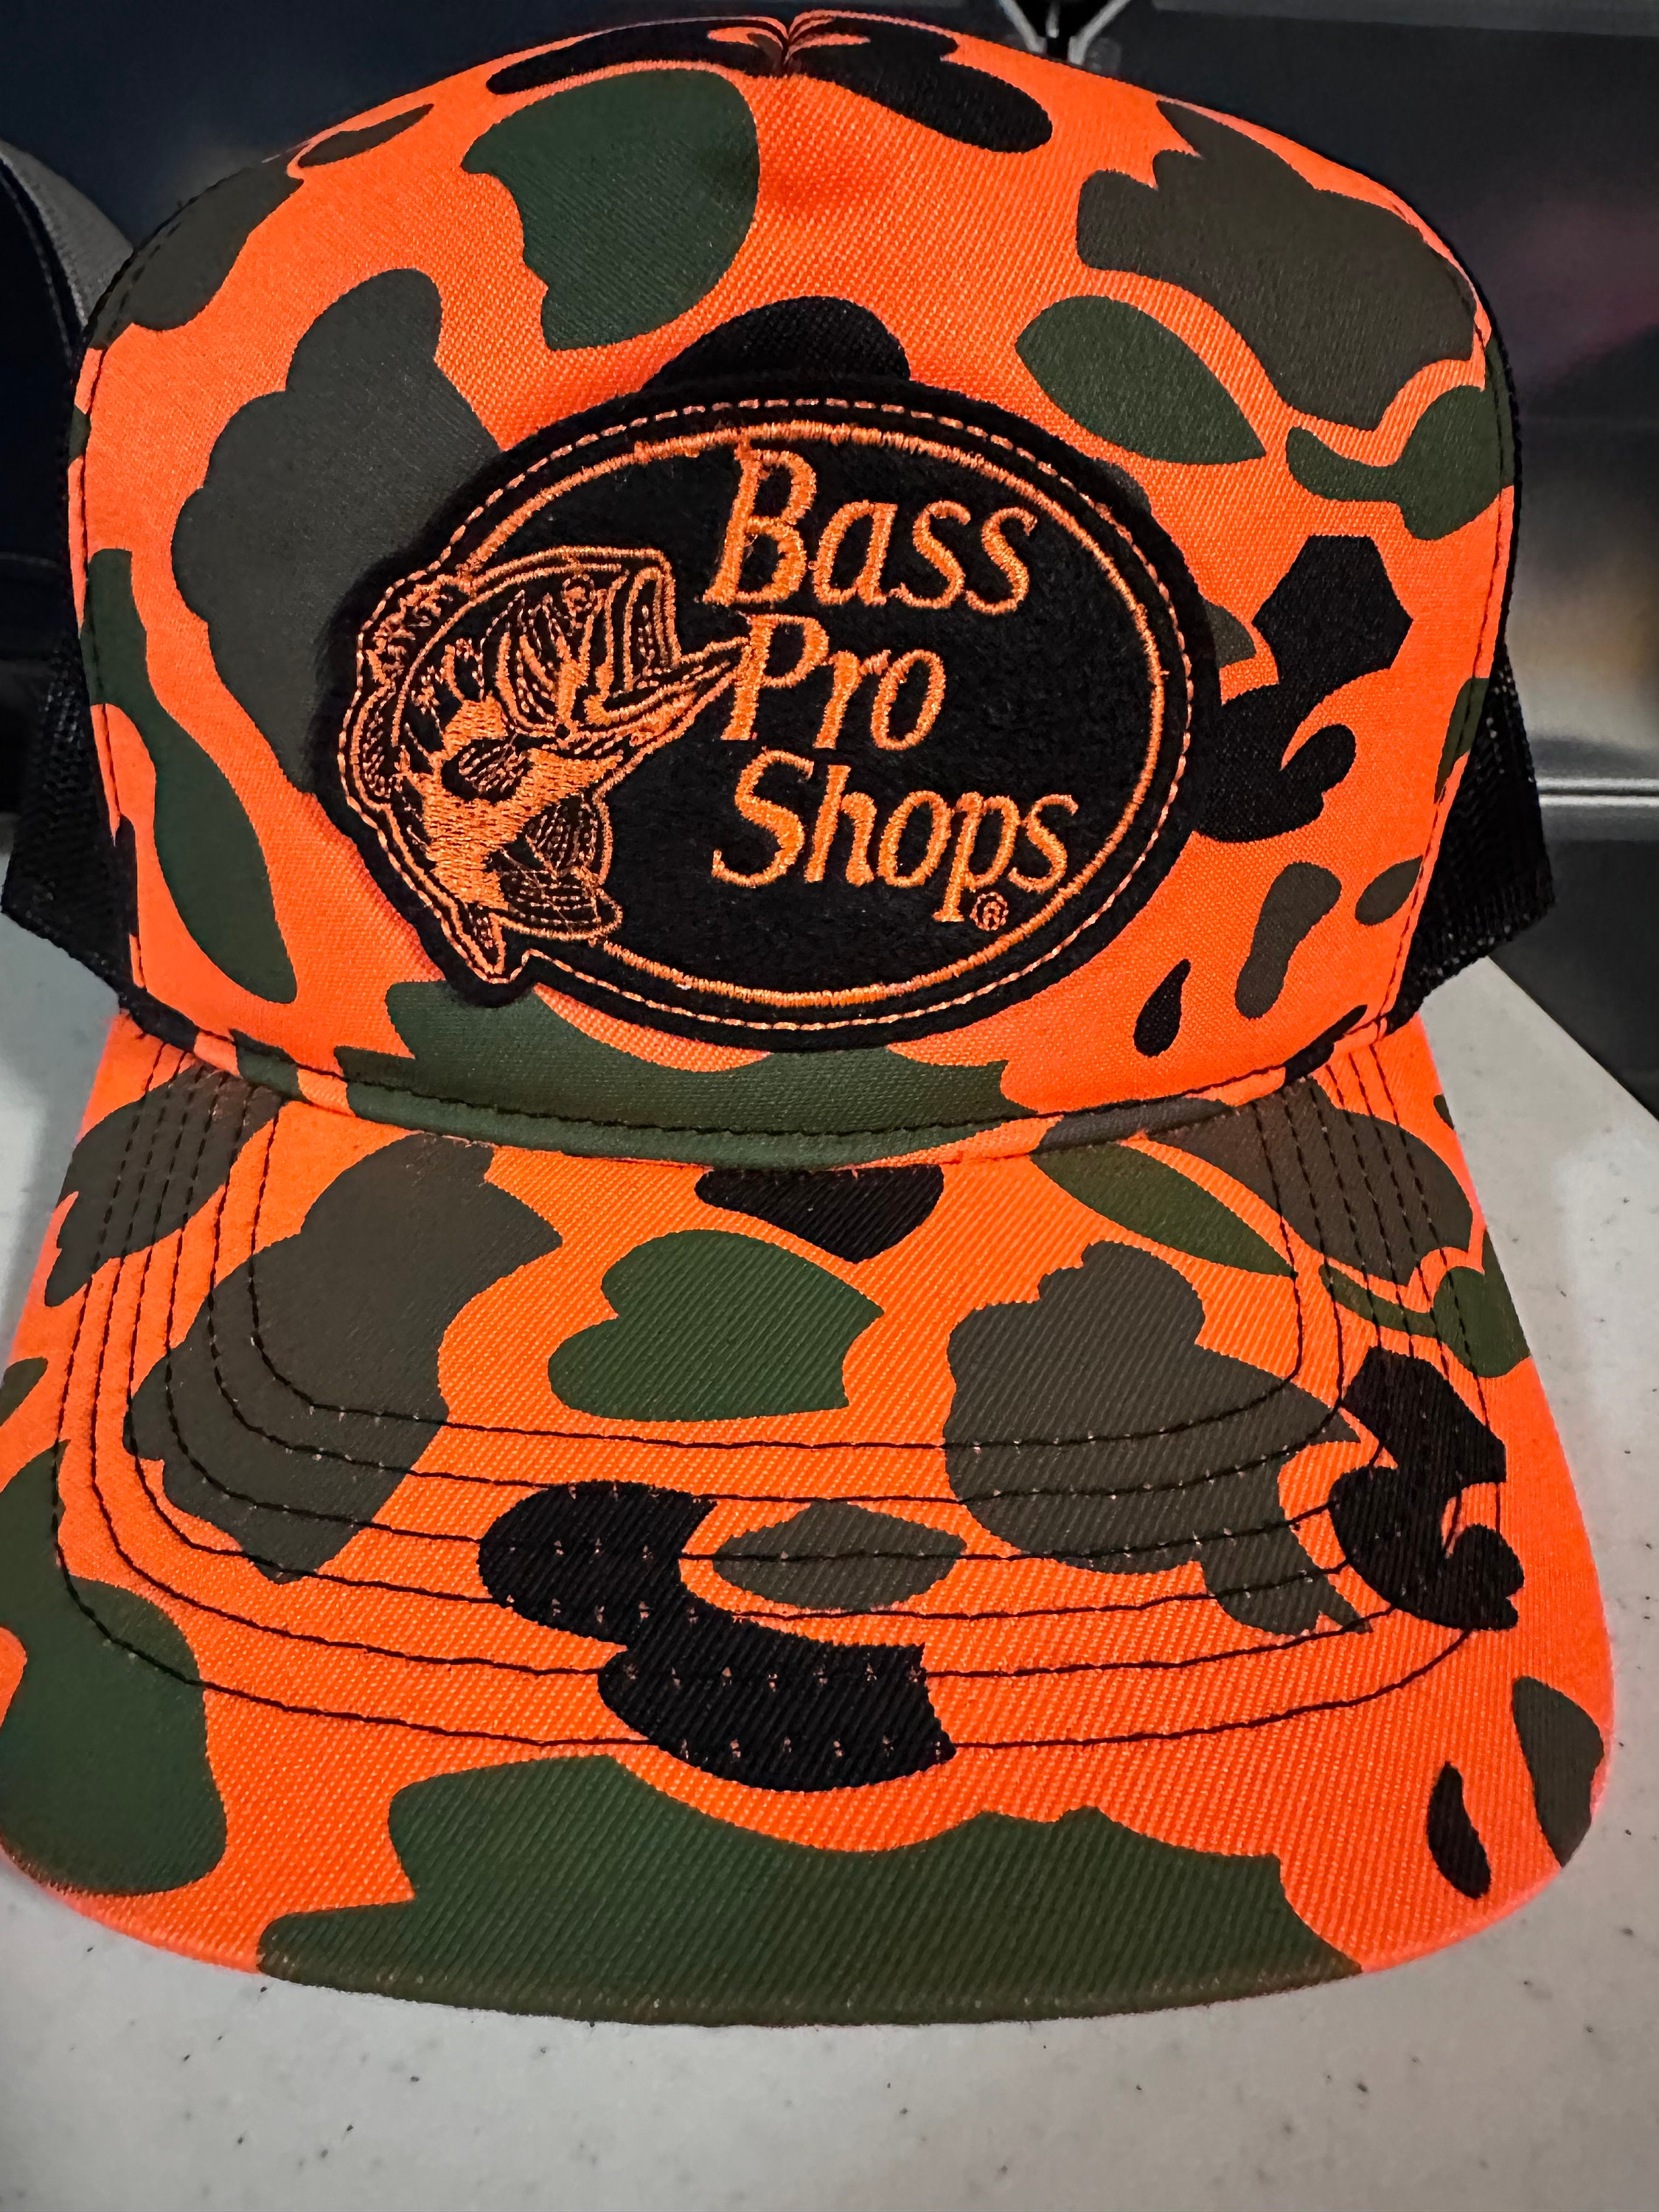 Bass Pro Shops Shirt -  Sweden